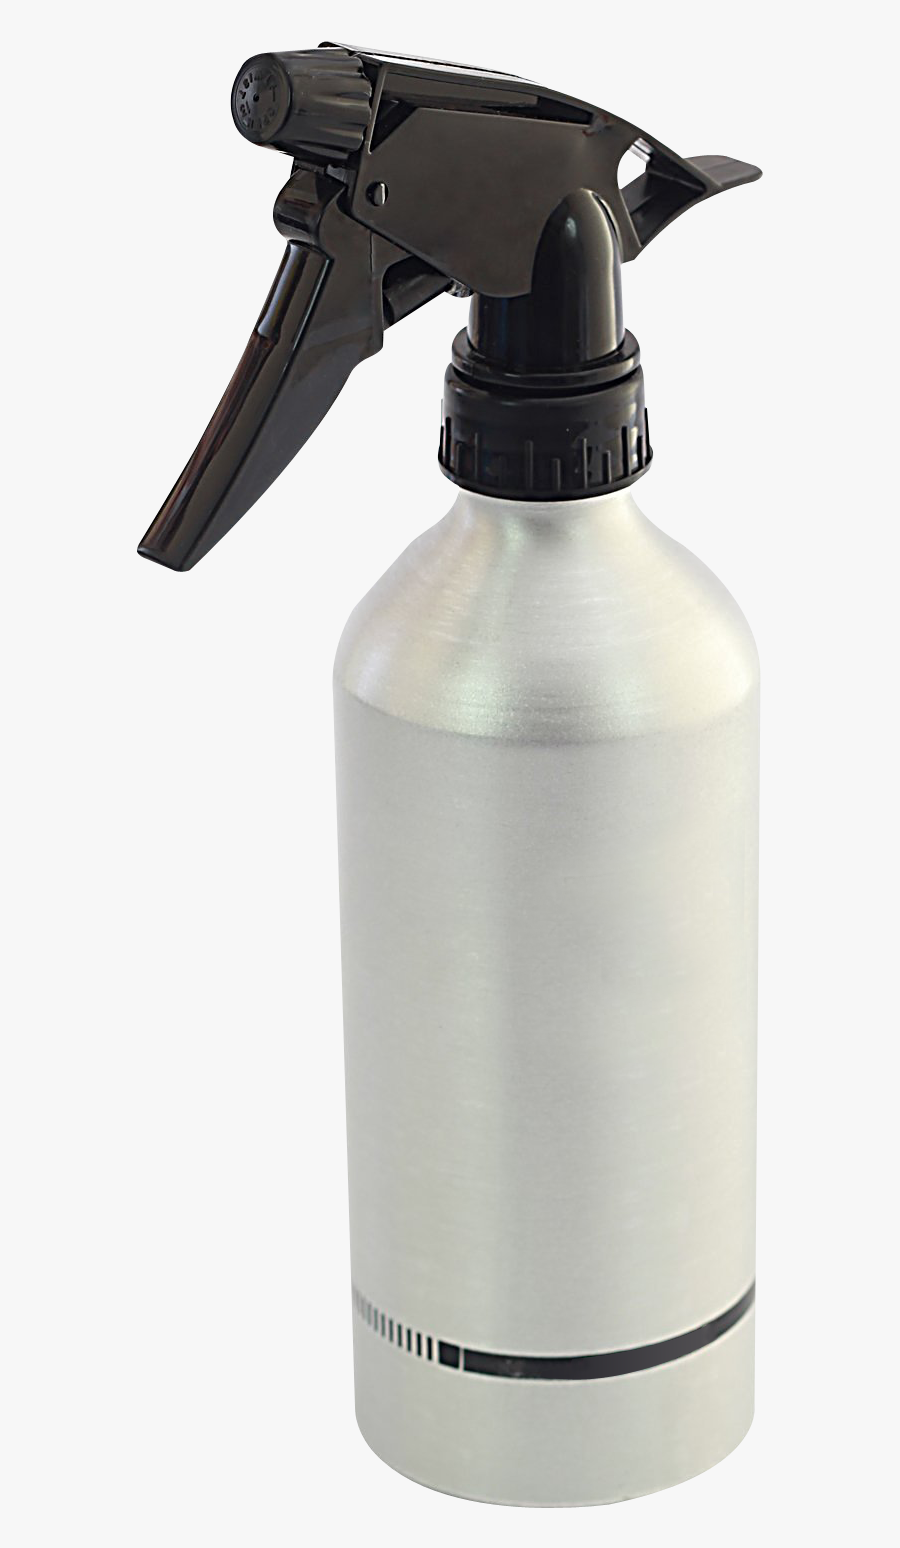 Spray Bottle Png Image - Spray Bottle Transparent Background, Transparent Clipart